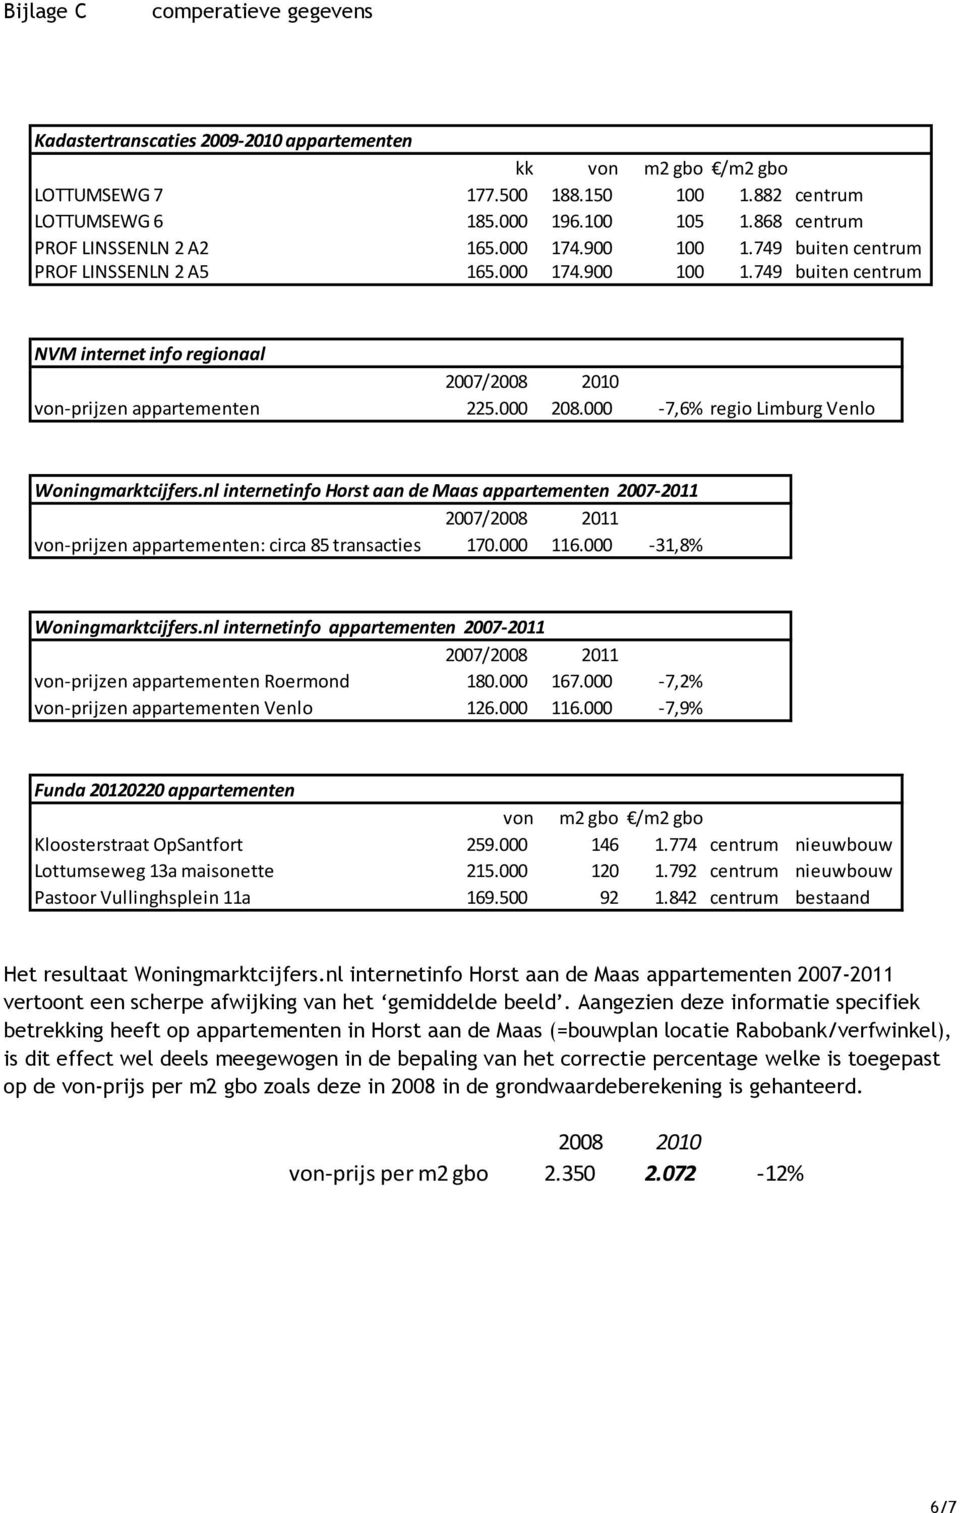 nl internetinfo Horst aan de Maas appartementen 27211 27/28 211 vonprijzen appartementen: circa 85 transacties 17. 116. 31,8% Woningmarktcijfers.